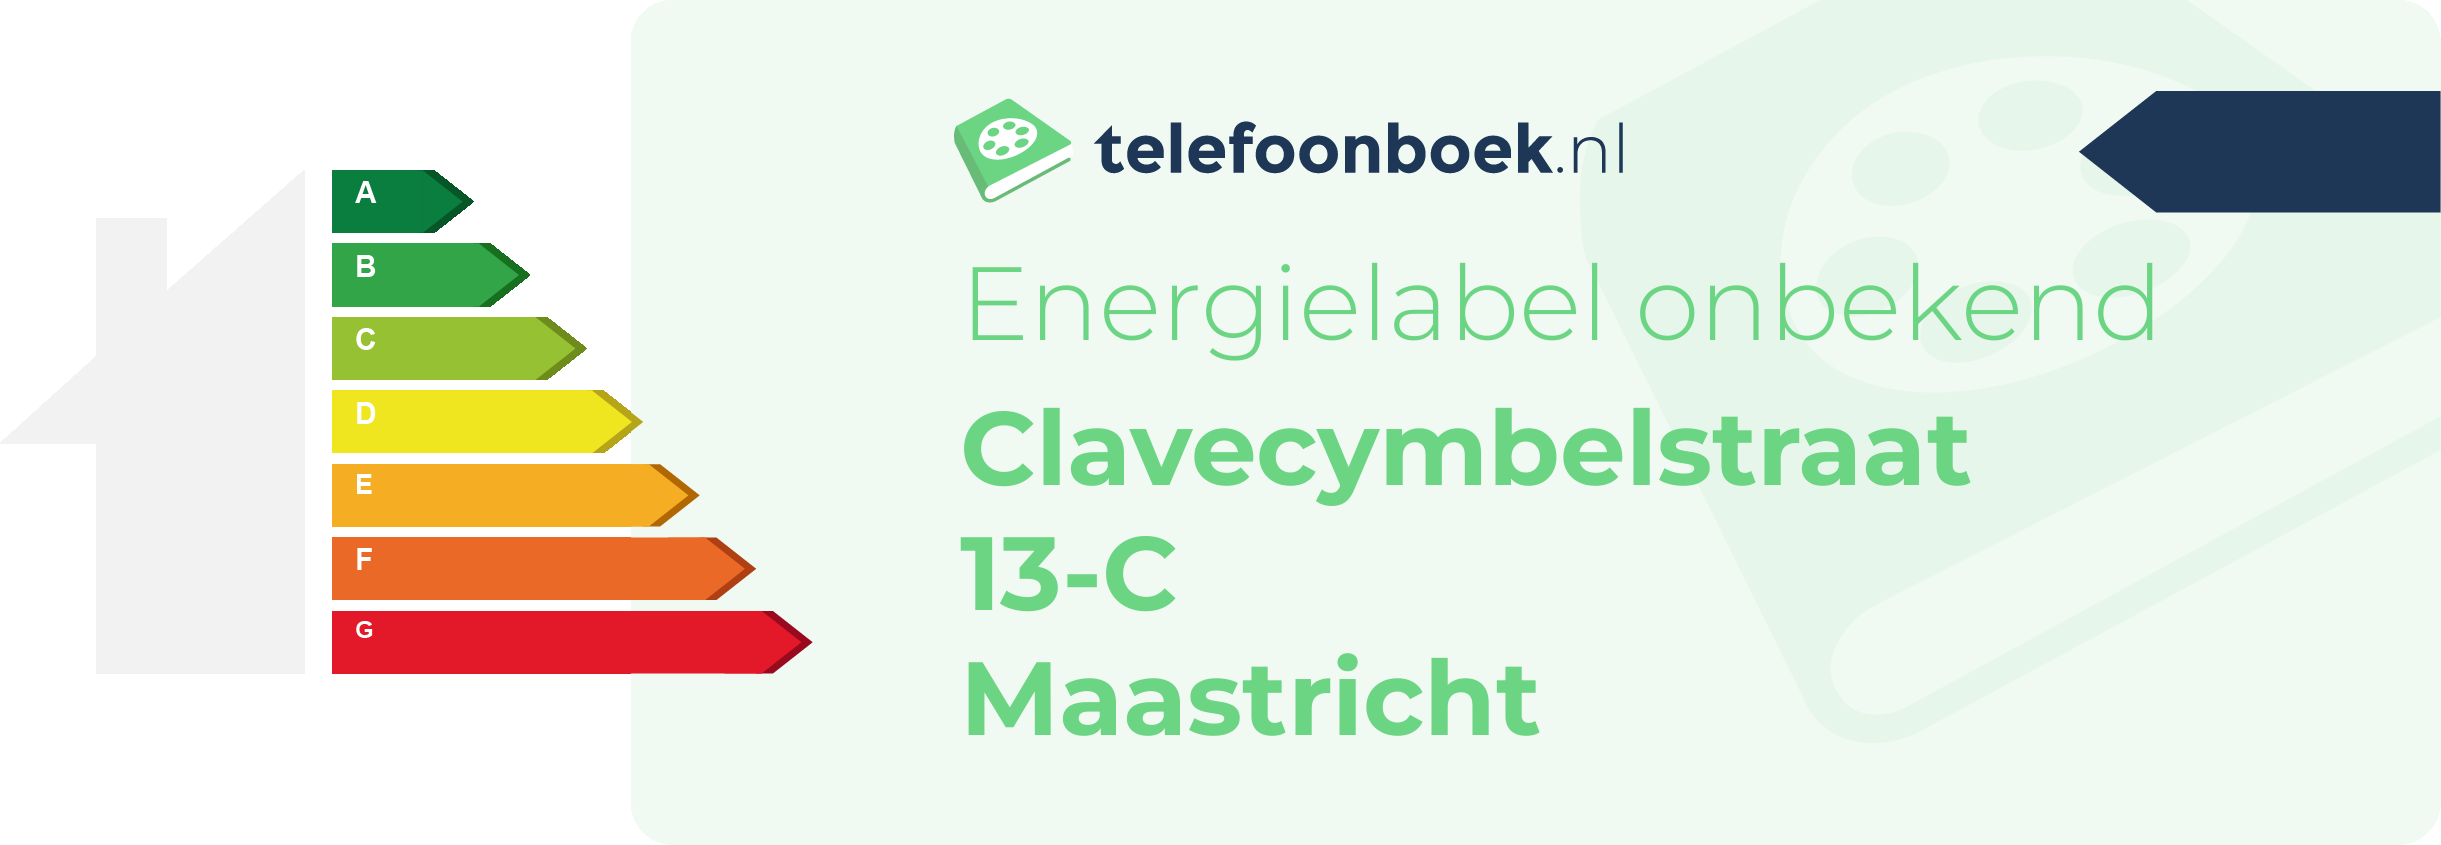 Energielabel Clavecymbelstraat 13-C Maastricht